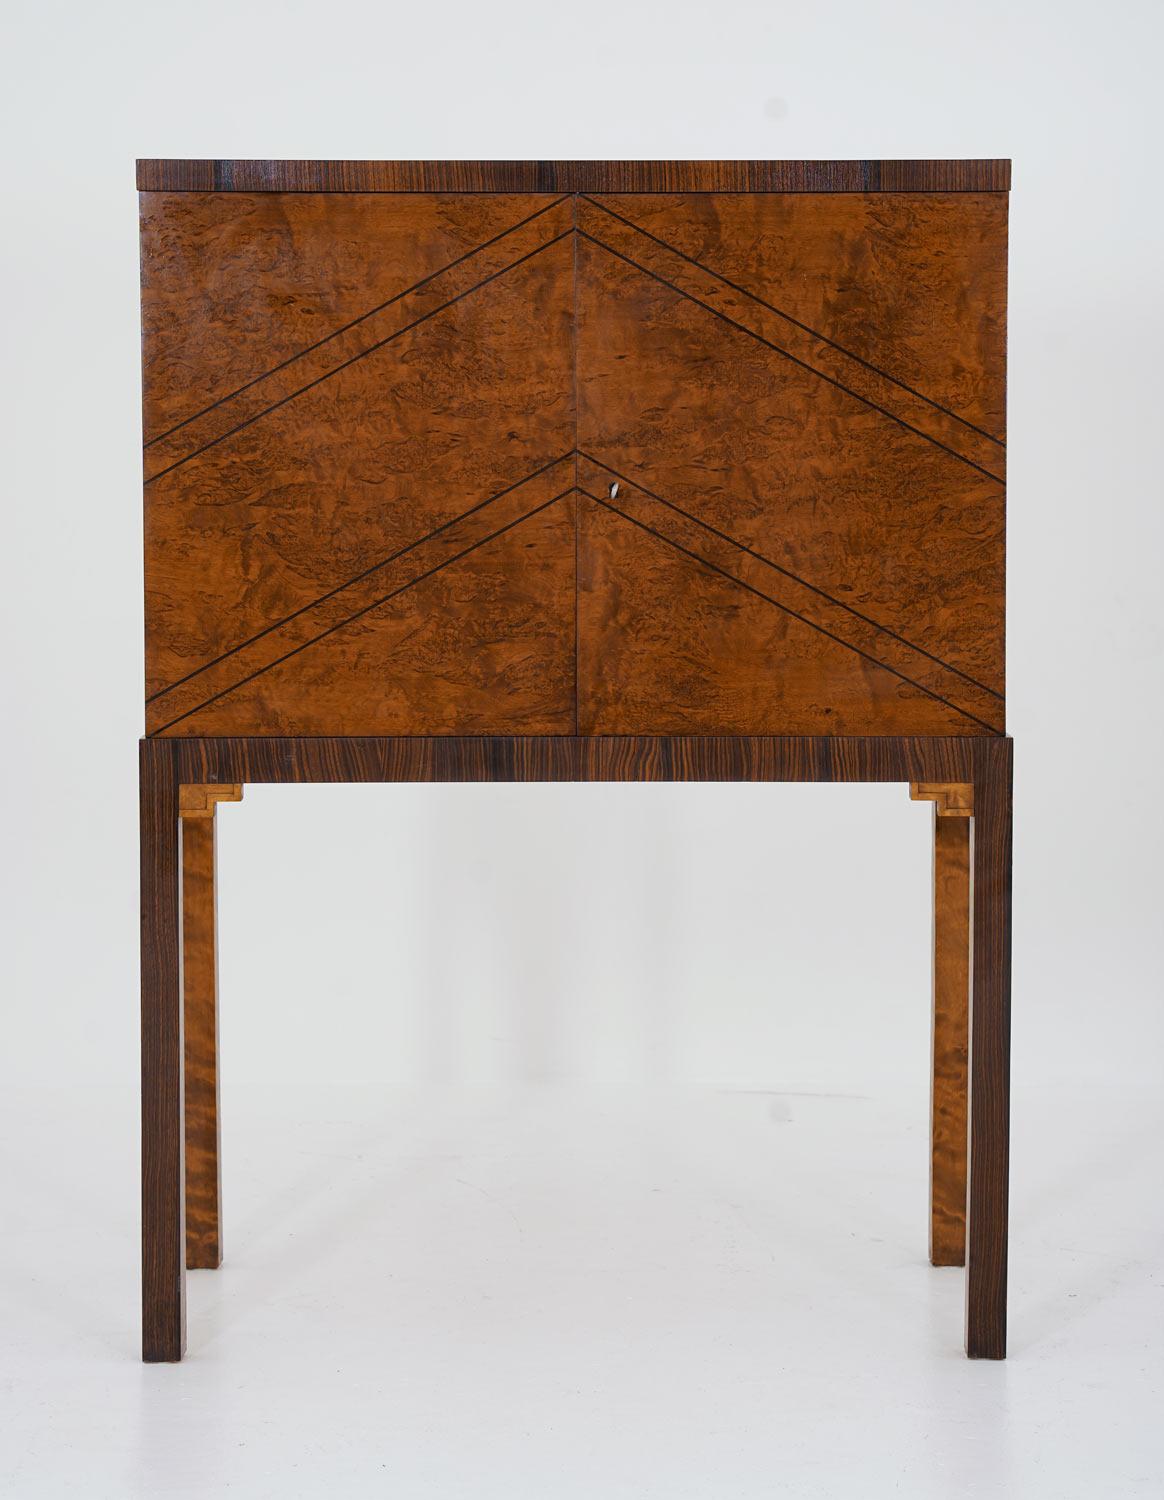 Superbe armoire fabriquée en Suède dans les années 1930.
Ce meuble est un excellent exemple de l'âge d'or du mobilier suédois, présentant une superbe qualité dans chaque détail. La façade et les côtés sont recouverts de placage de racines d'orme,